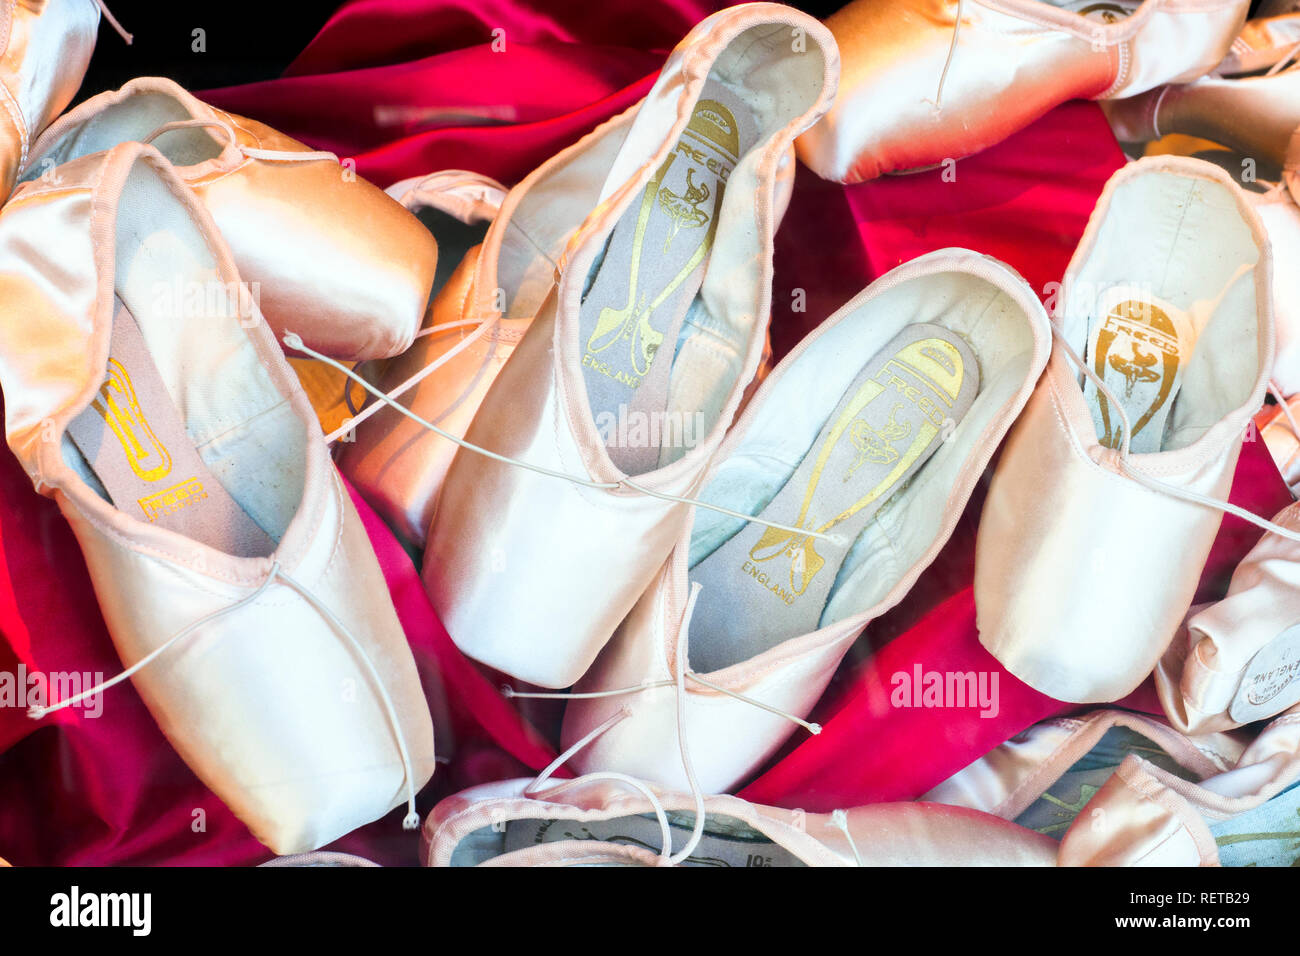 Des chaussons de ballet rose - Londres, Angleterre Banque D'Images